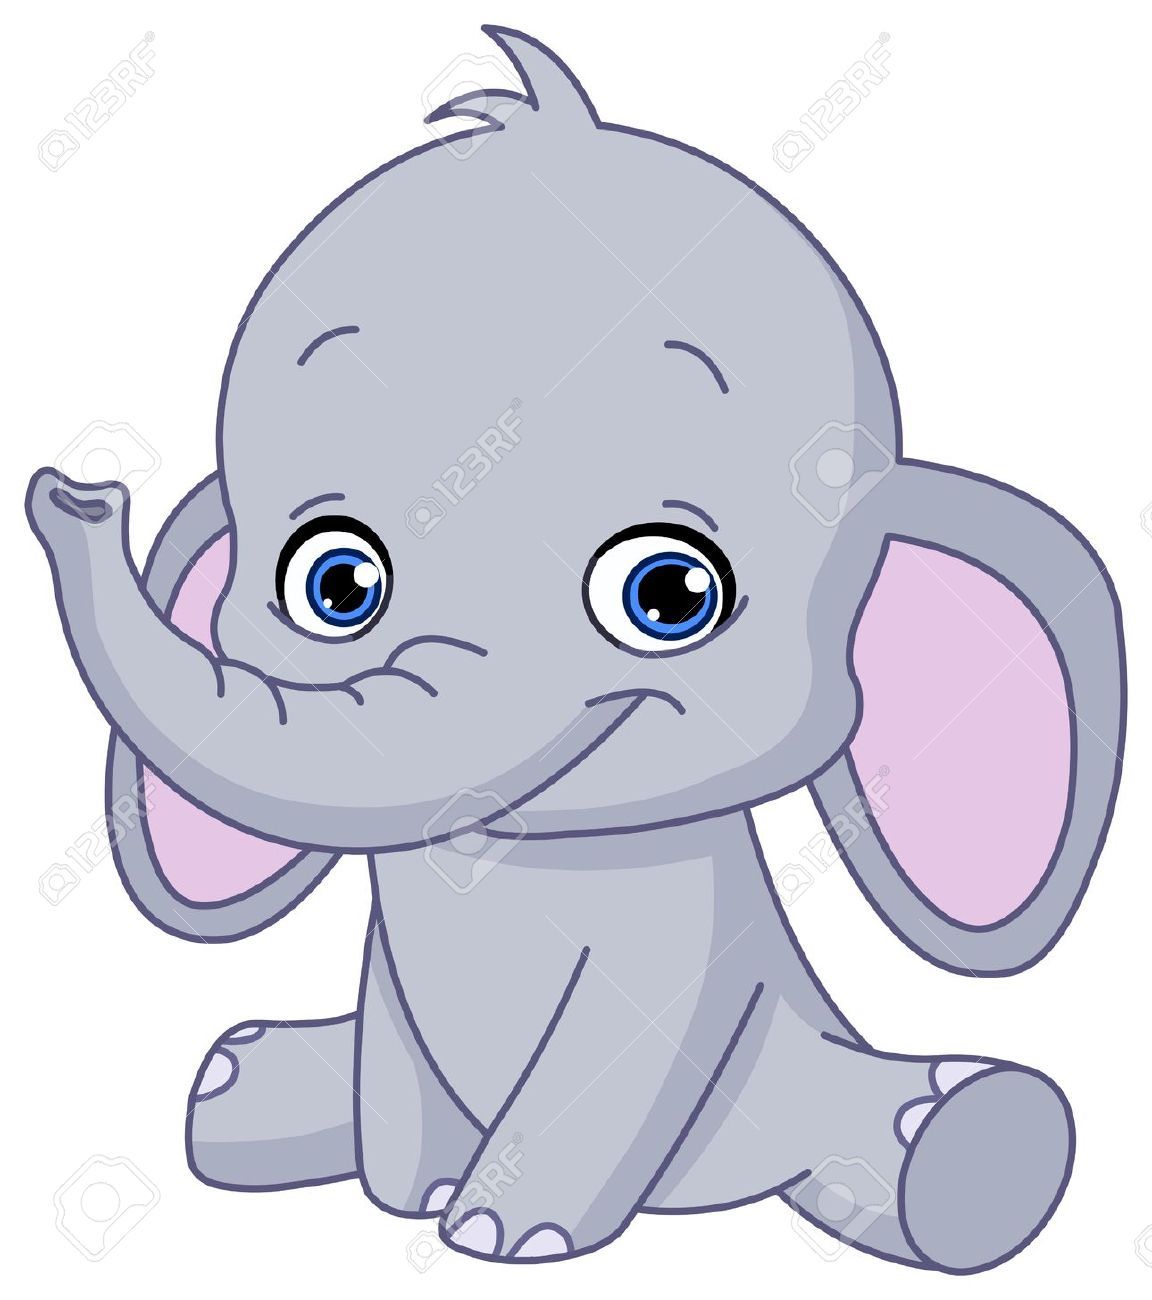 clipart cartoon animals cute elephant